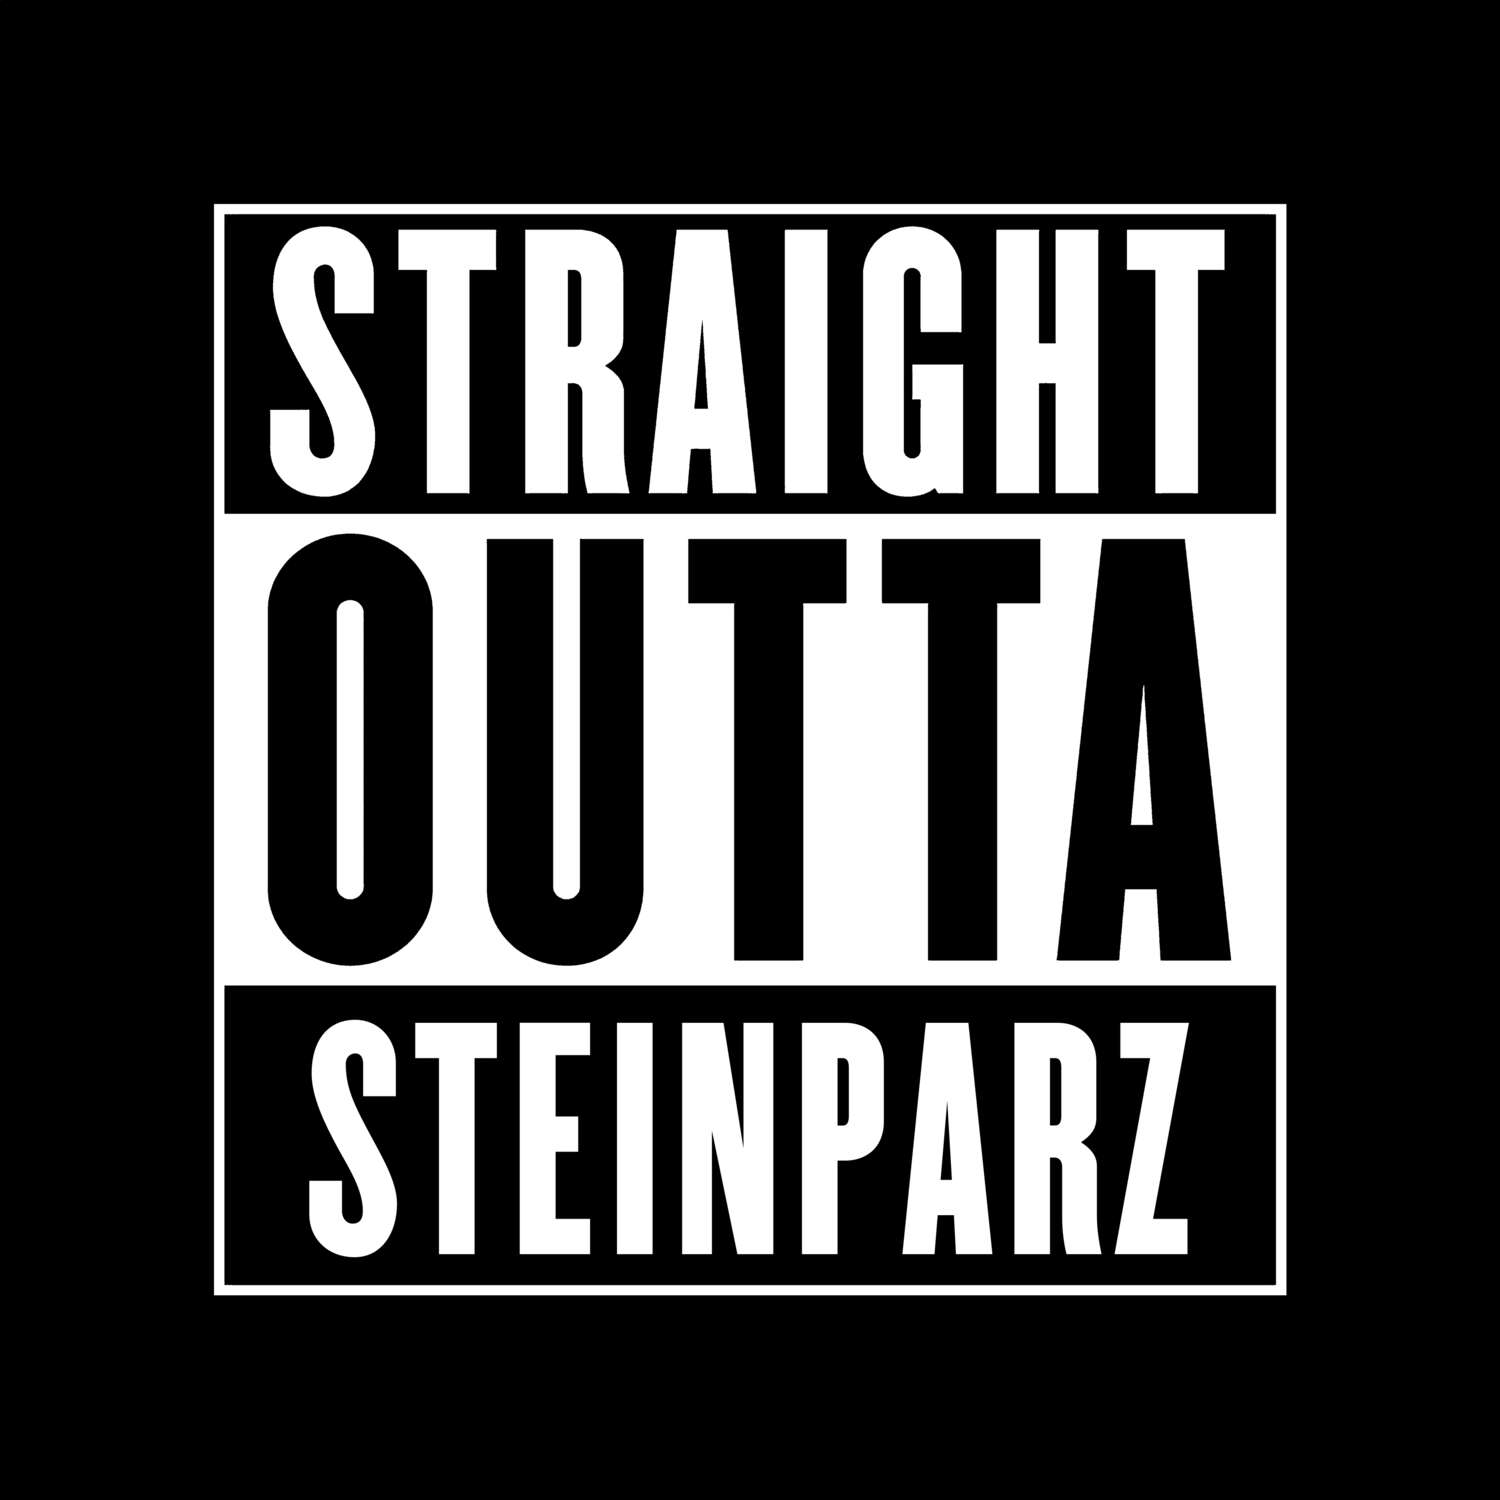 Steinparz T-Shirt »Straight Outta«